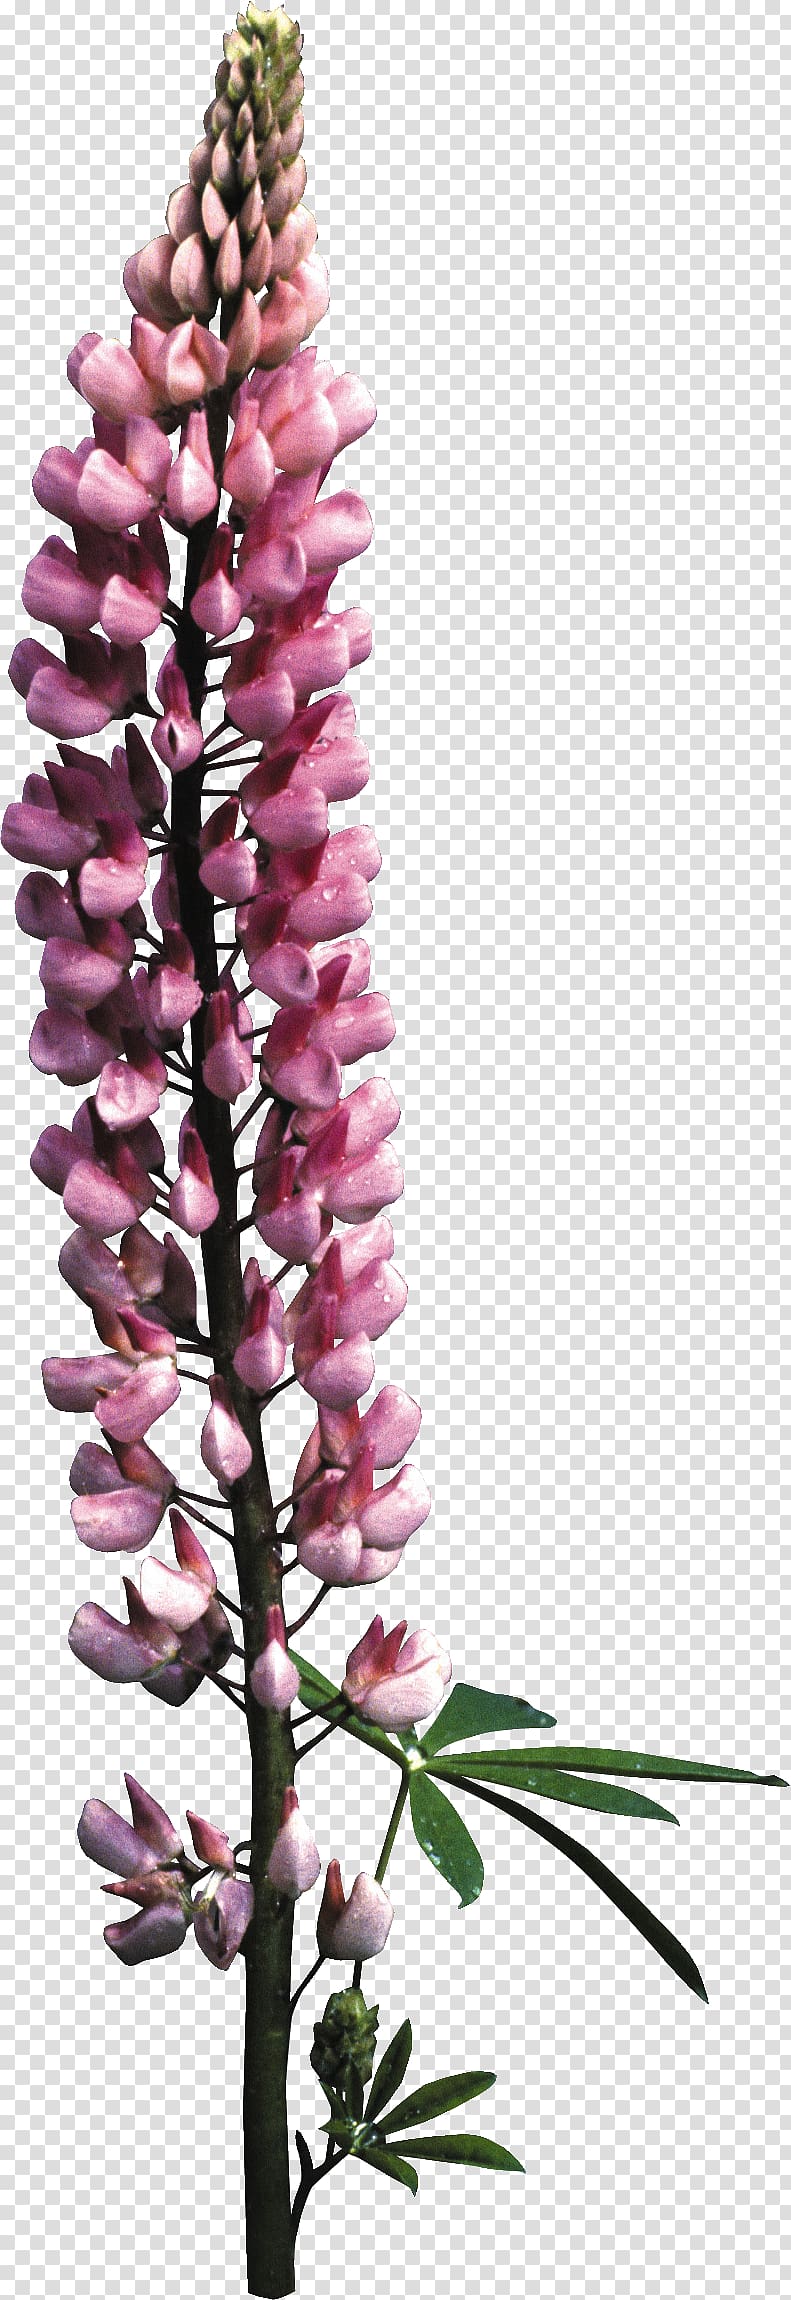 Foxgloves Floral design Cut flowers, arrow flowers transparent background PNG clipart